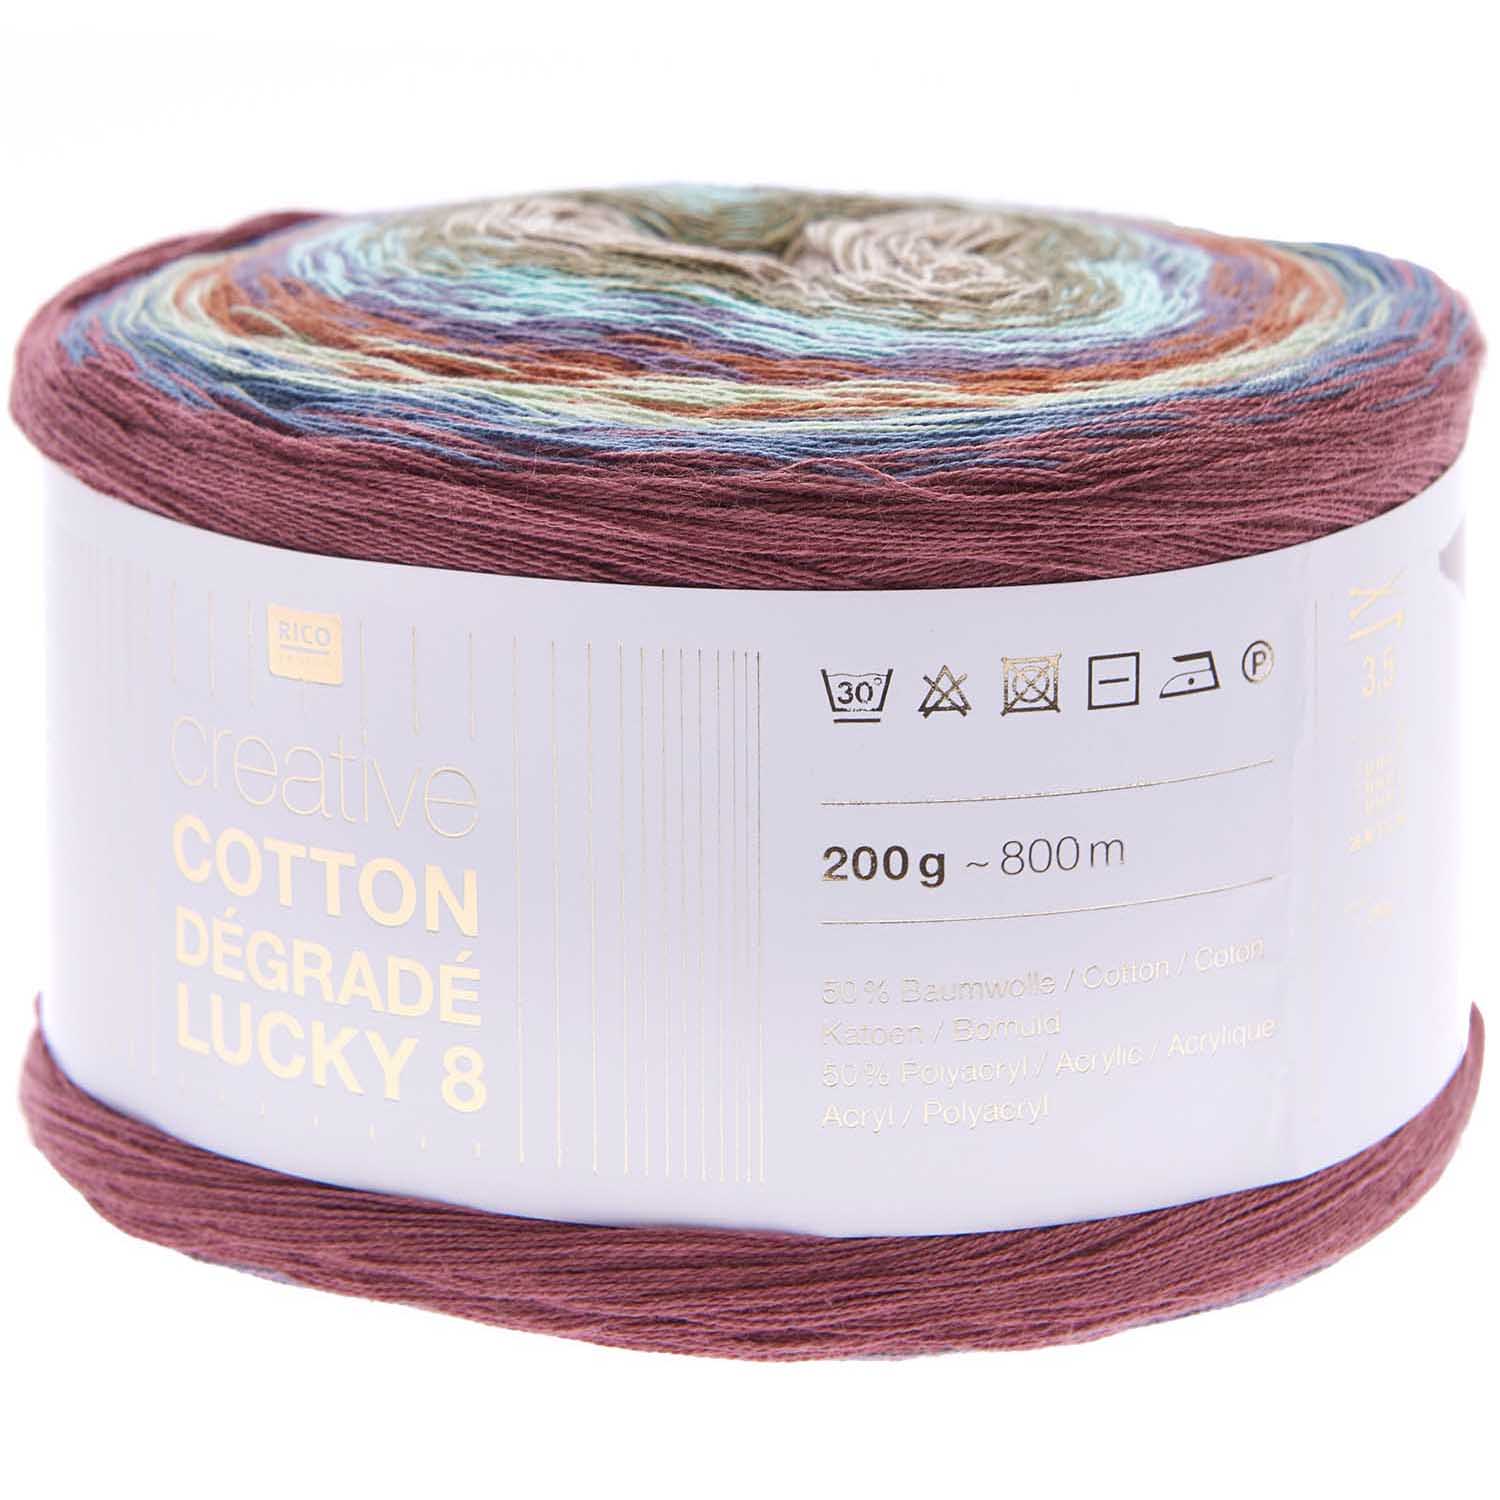 Creative Cotton Dégradé Lucky 8 50% CO 50% PAN 200g / 800m